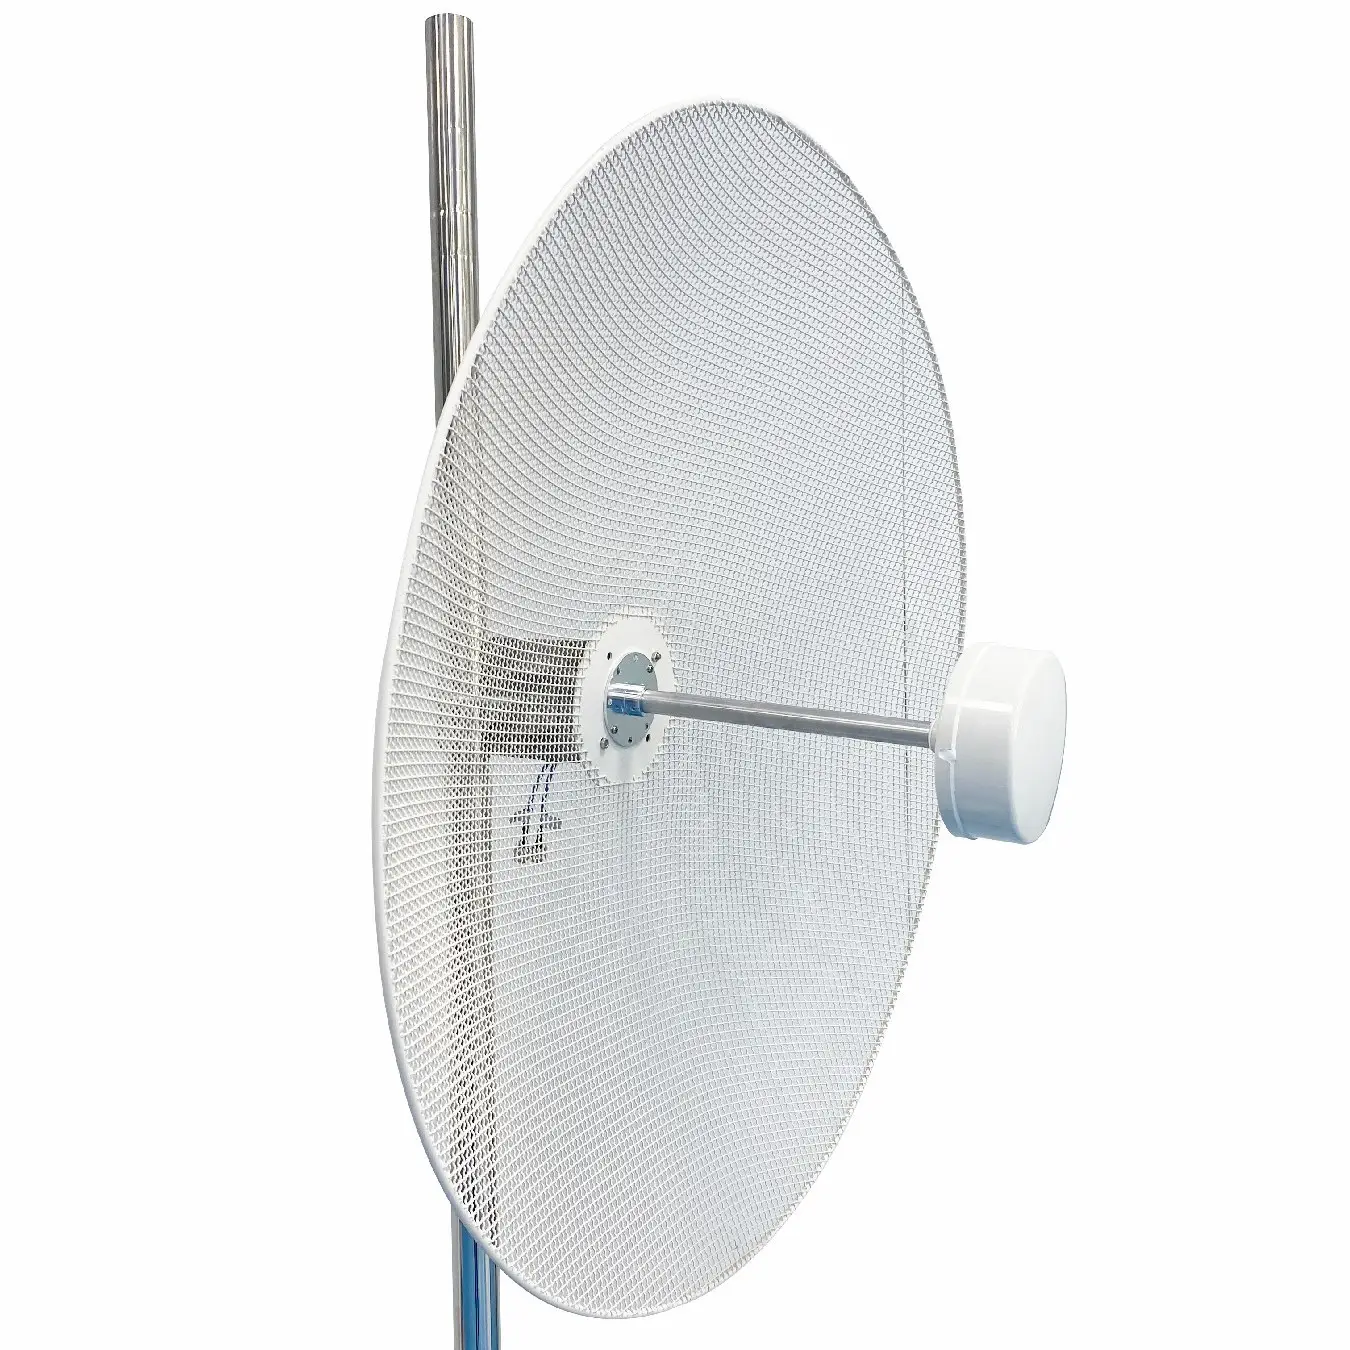 Yüksek kazanç 50km açık anten uzun menzilli WiFi kapsama 5G, 4G LTE, 3G ağları erişim parabolik anten